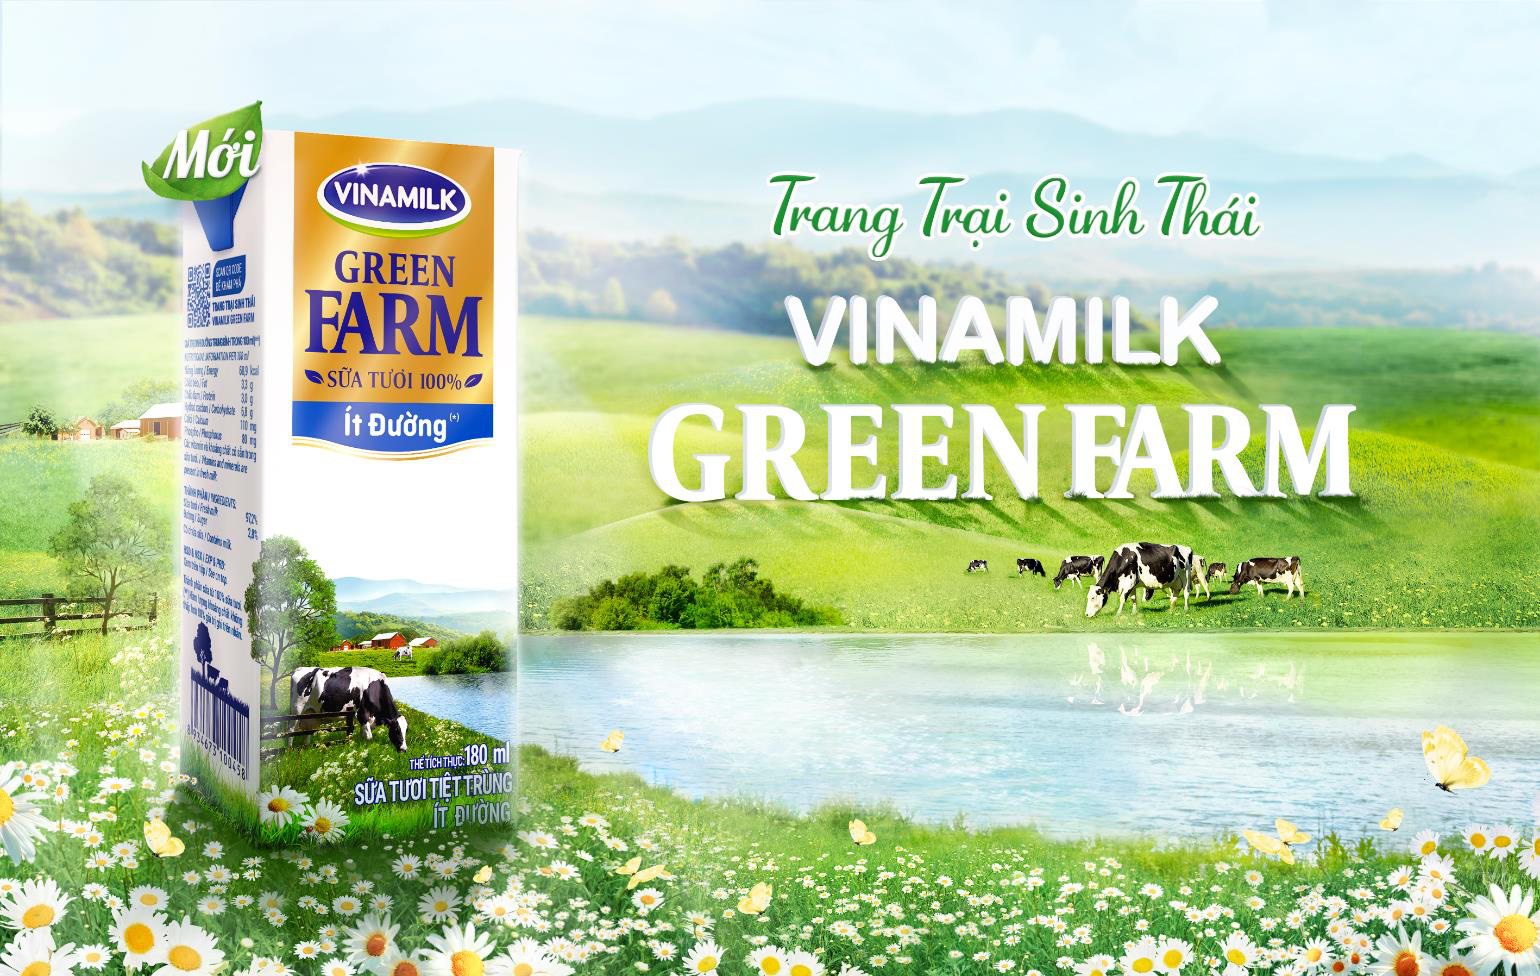 Ra mắt hệ thống trang trại sinh thái Vinamilk Green Farm - Ảnh 4.